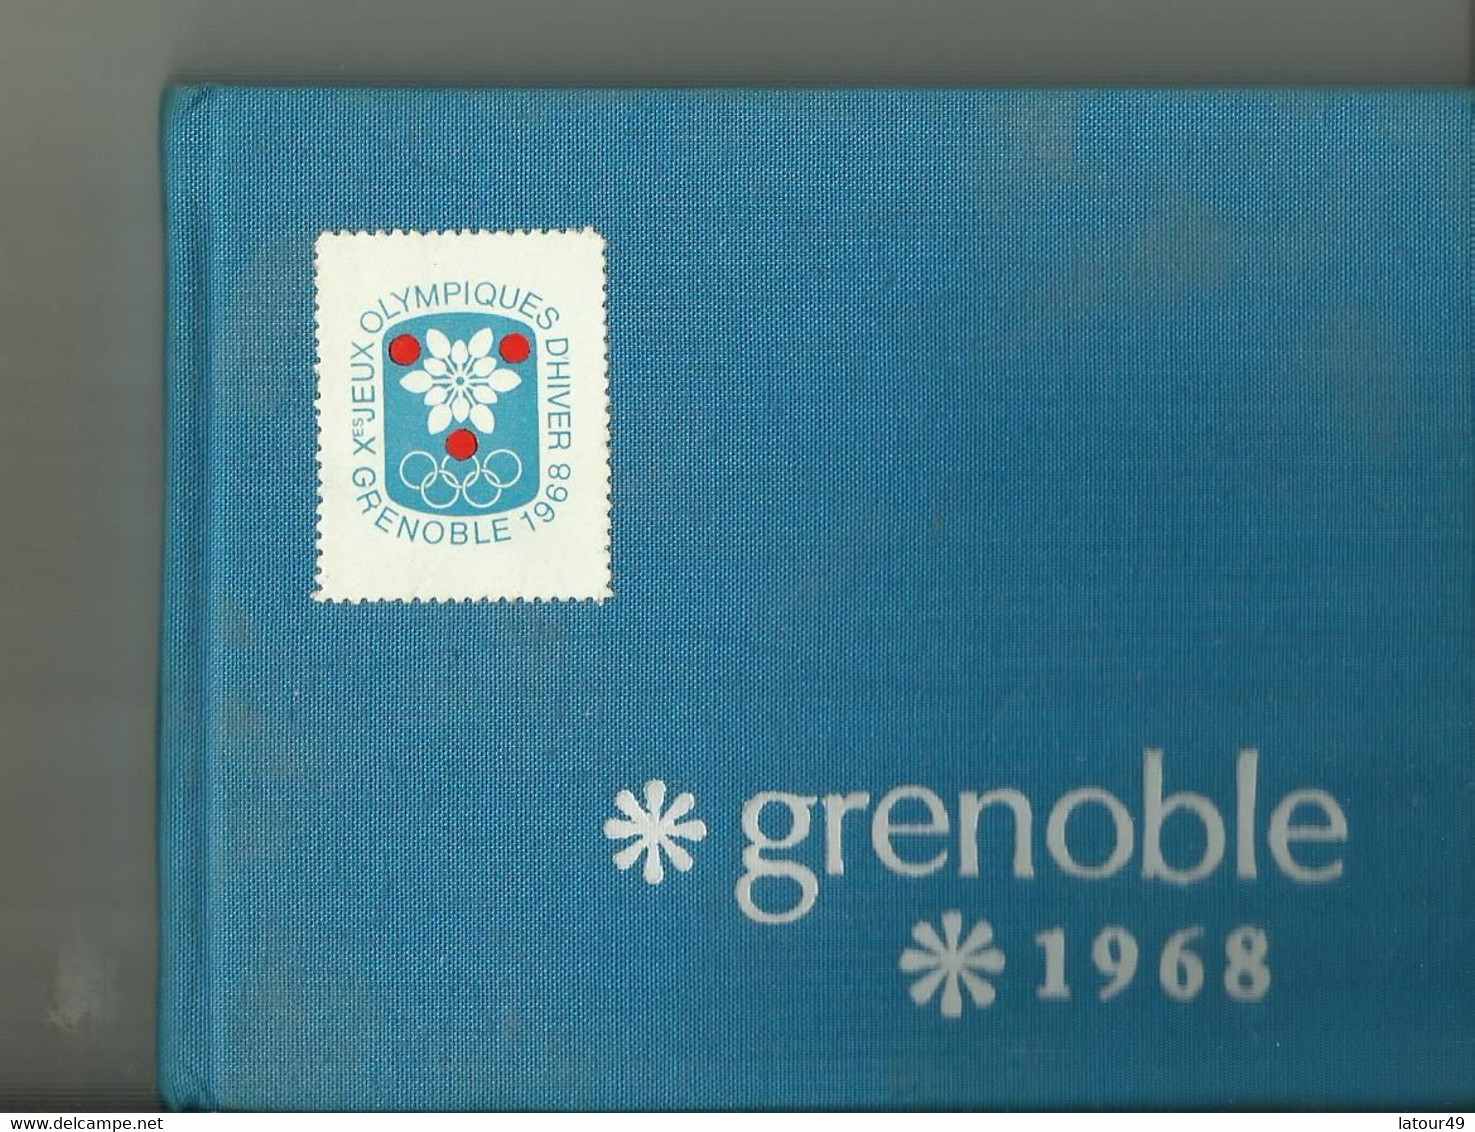 Jeux Olympique Grenoble1968  Autographes Pologne.jozet Kocjan Crwin Fredor Etc. Norvege Bjorn Wirkola Porte Drapeau Etc - Autographes